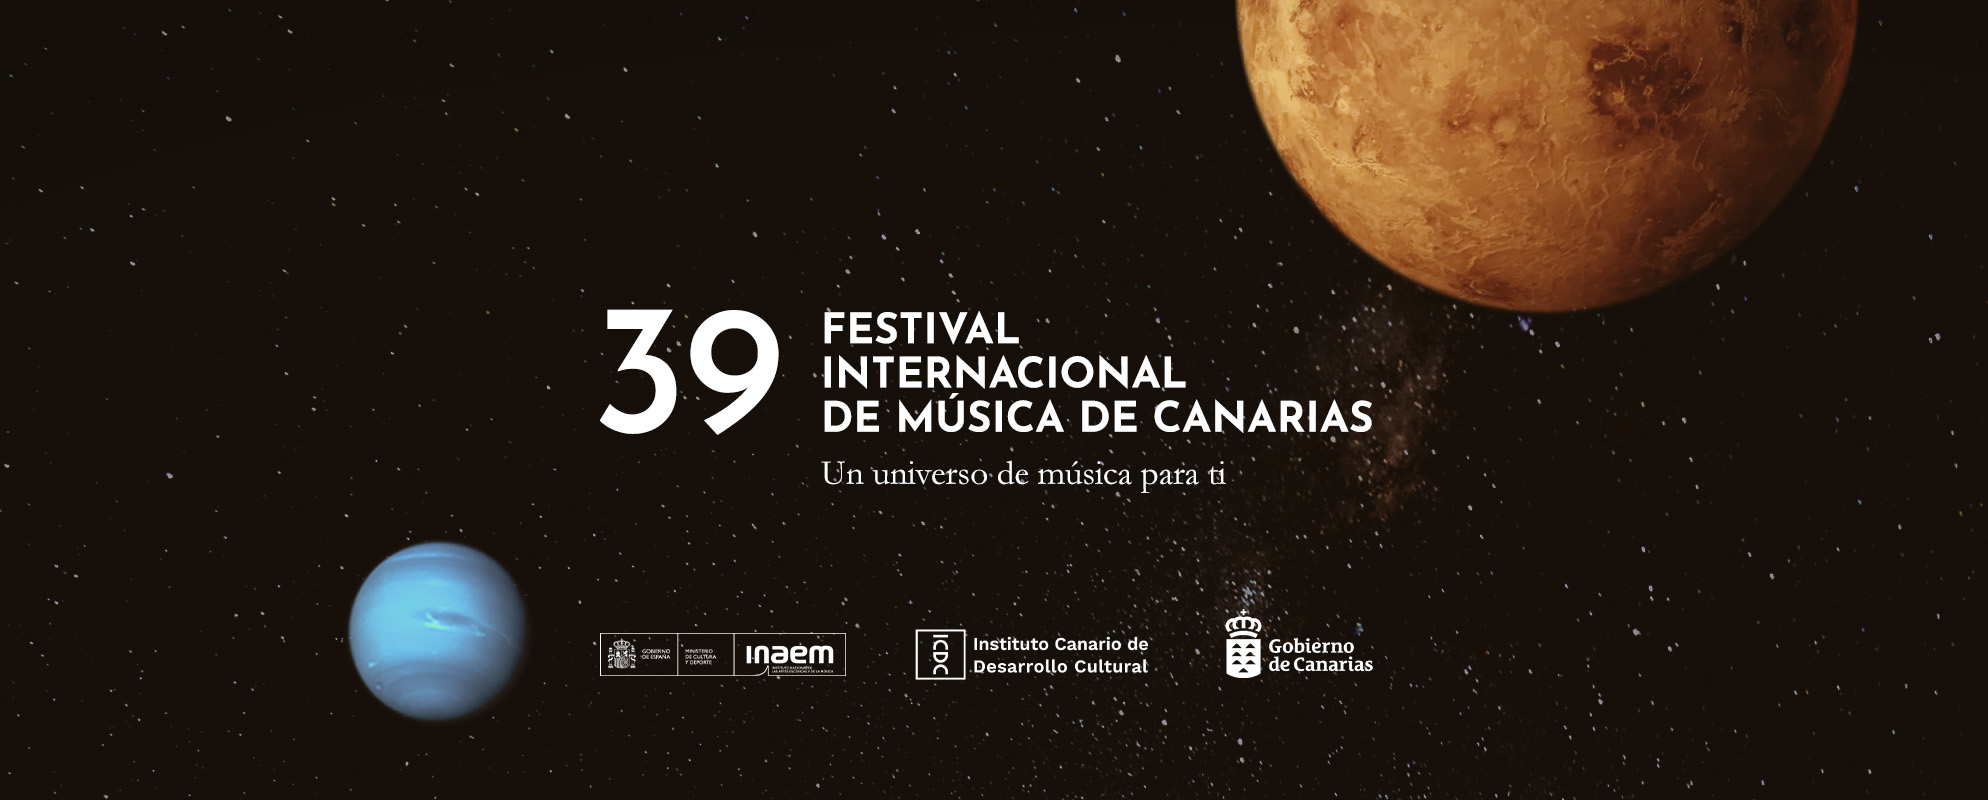 39o-Festival-Internacional-de-Musica-de-Canarias.jpg28 de